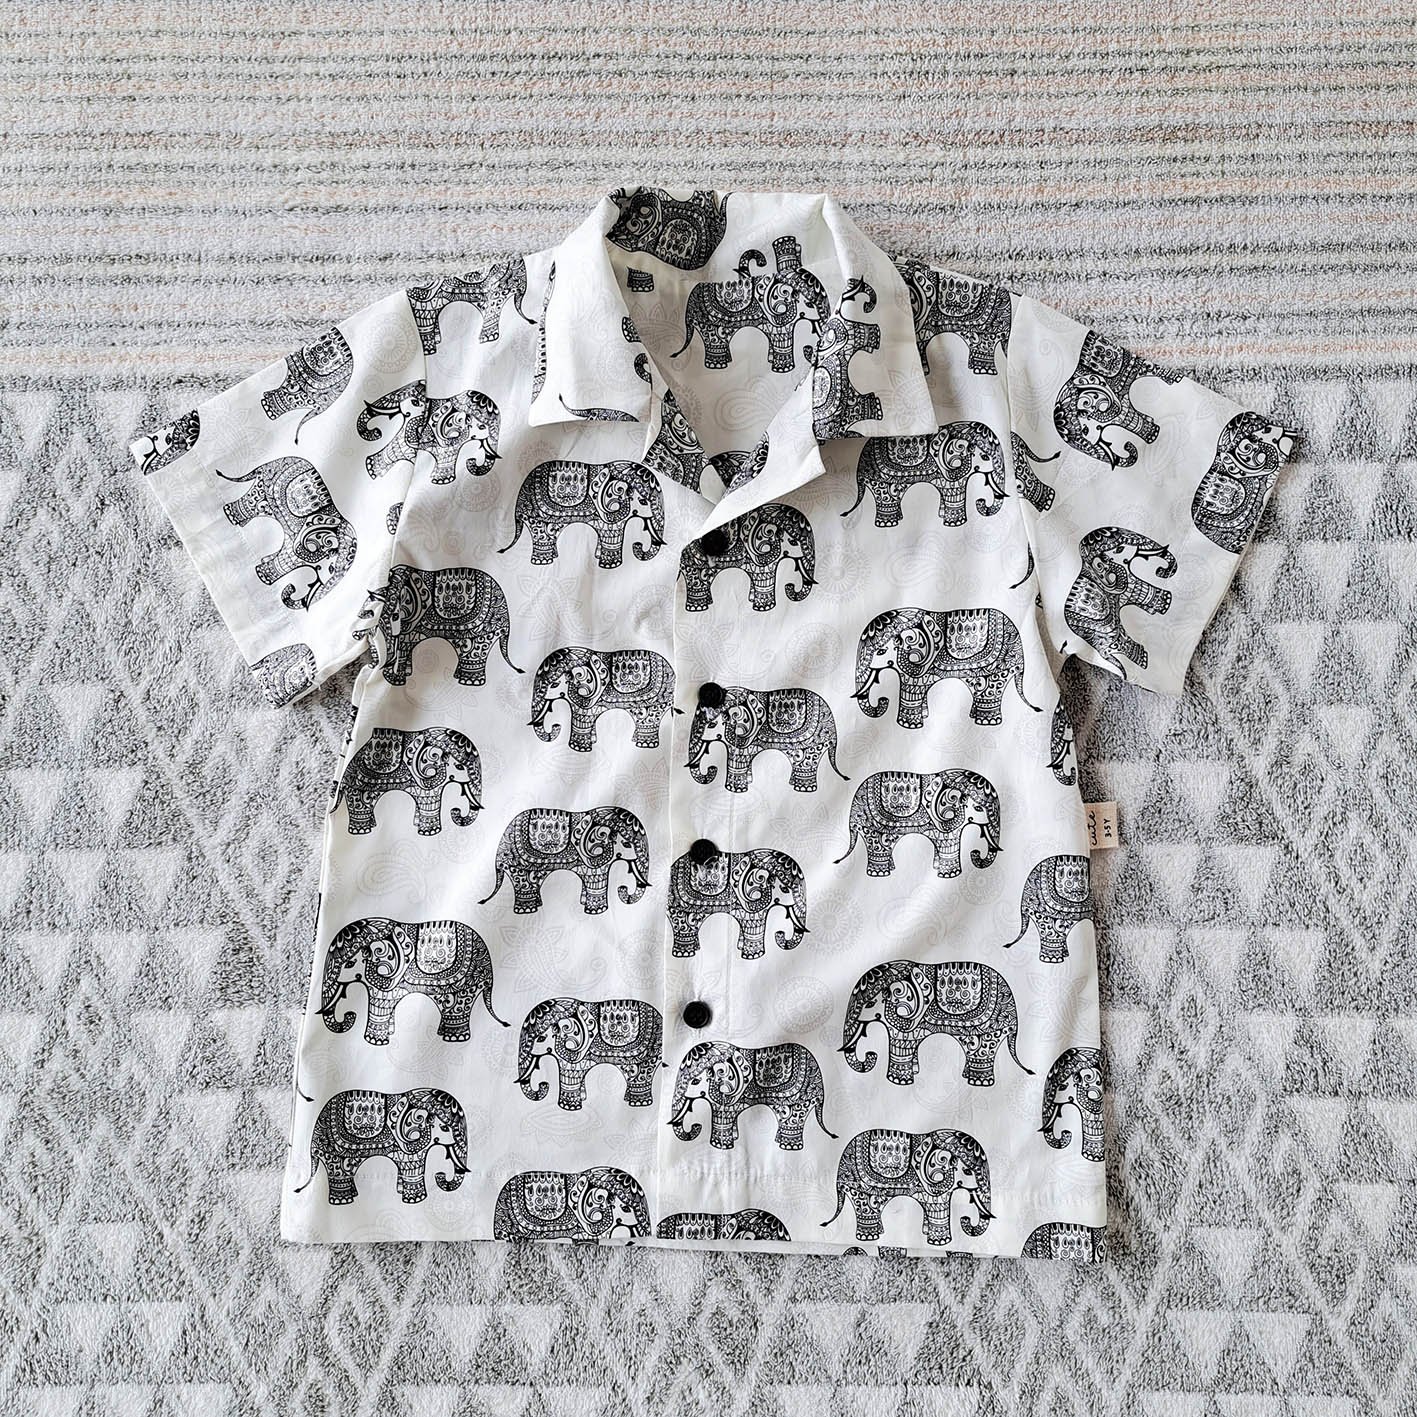 เด็กชาย-หญิง เสื้อเชิ๊ต 100% ผ้าคอตตอนพิมพ์ลายช้างสีขาว